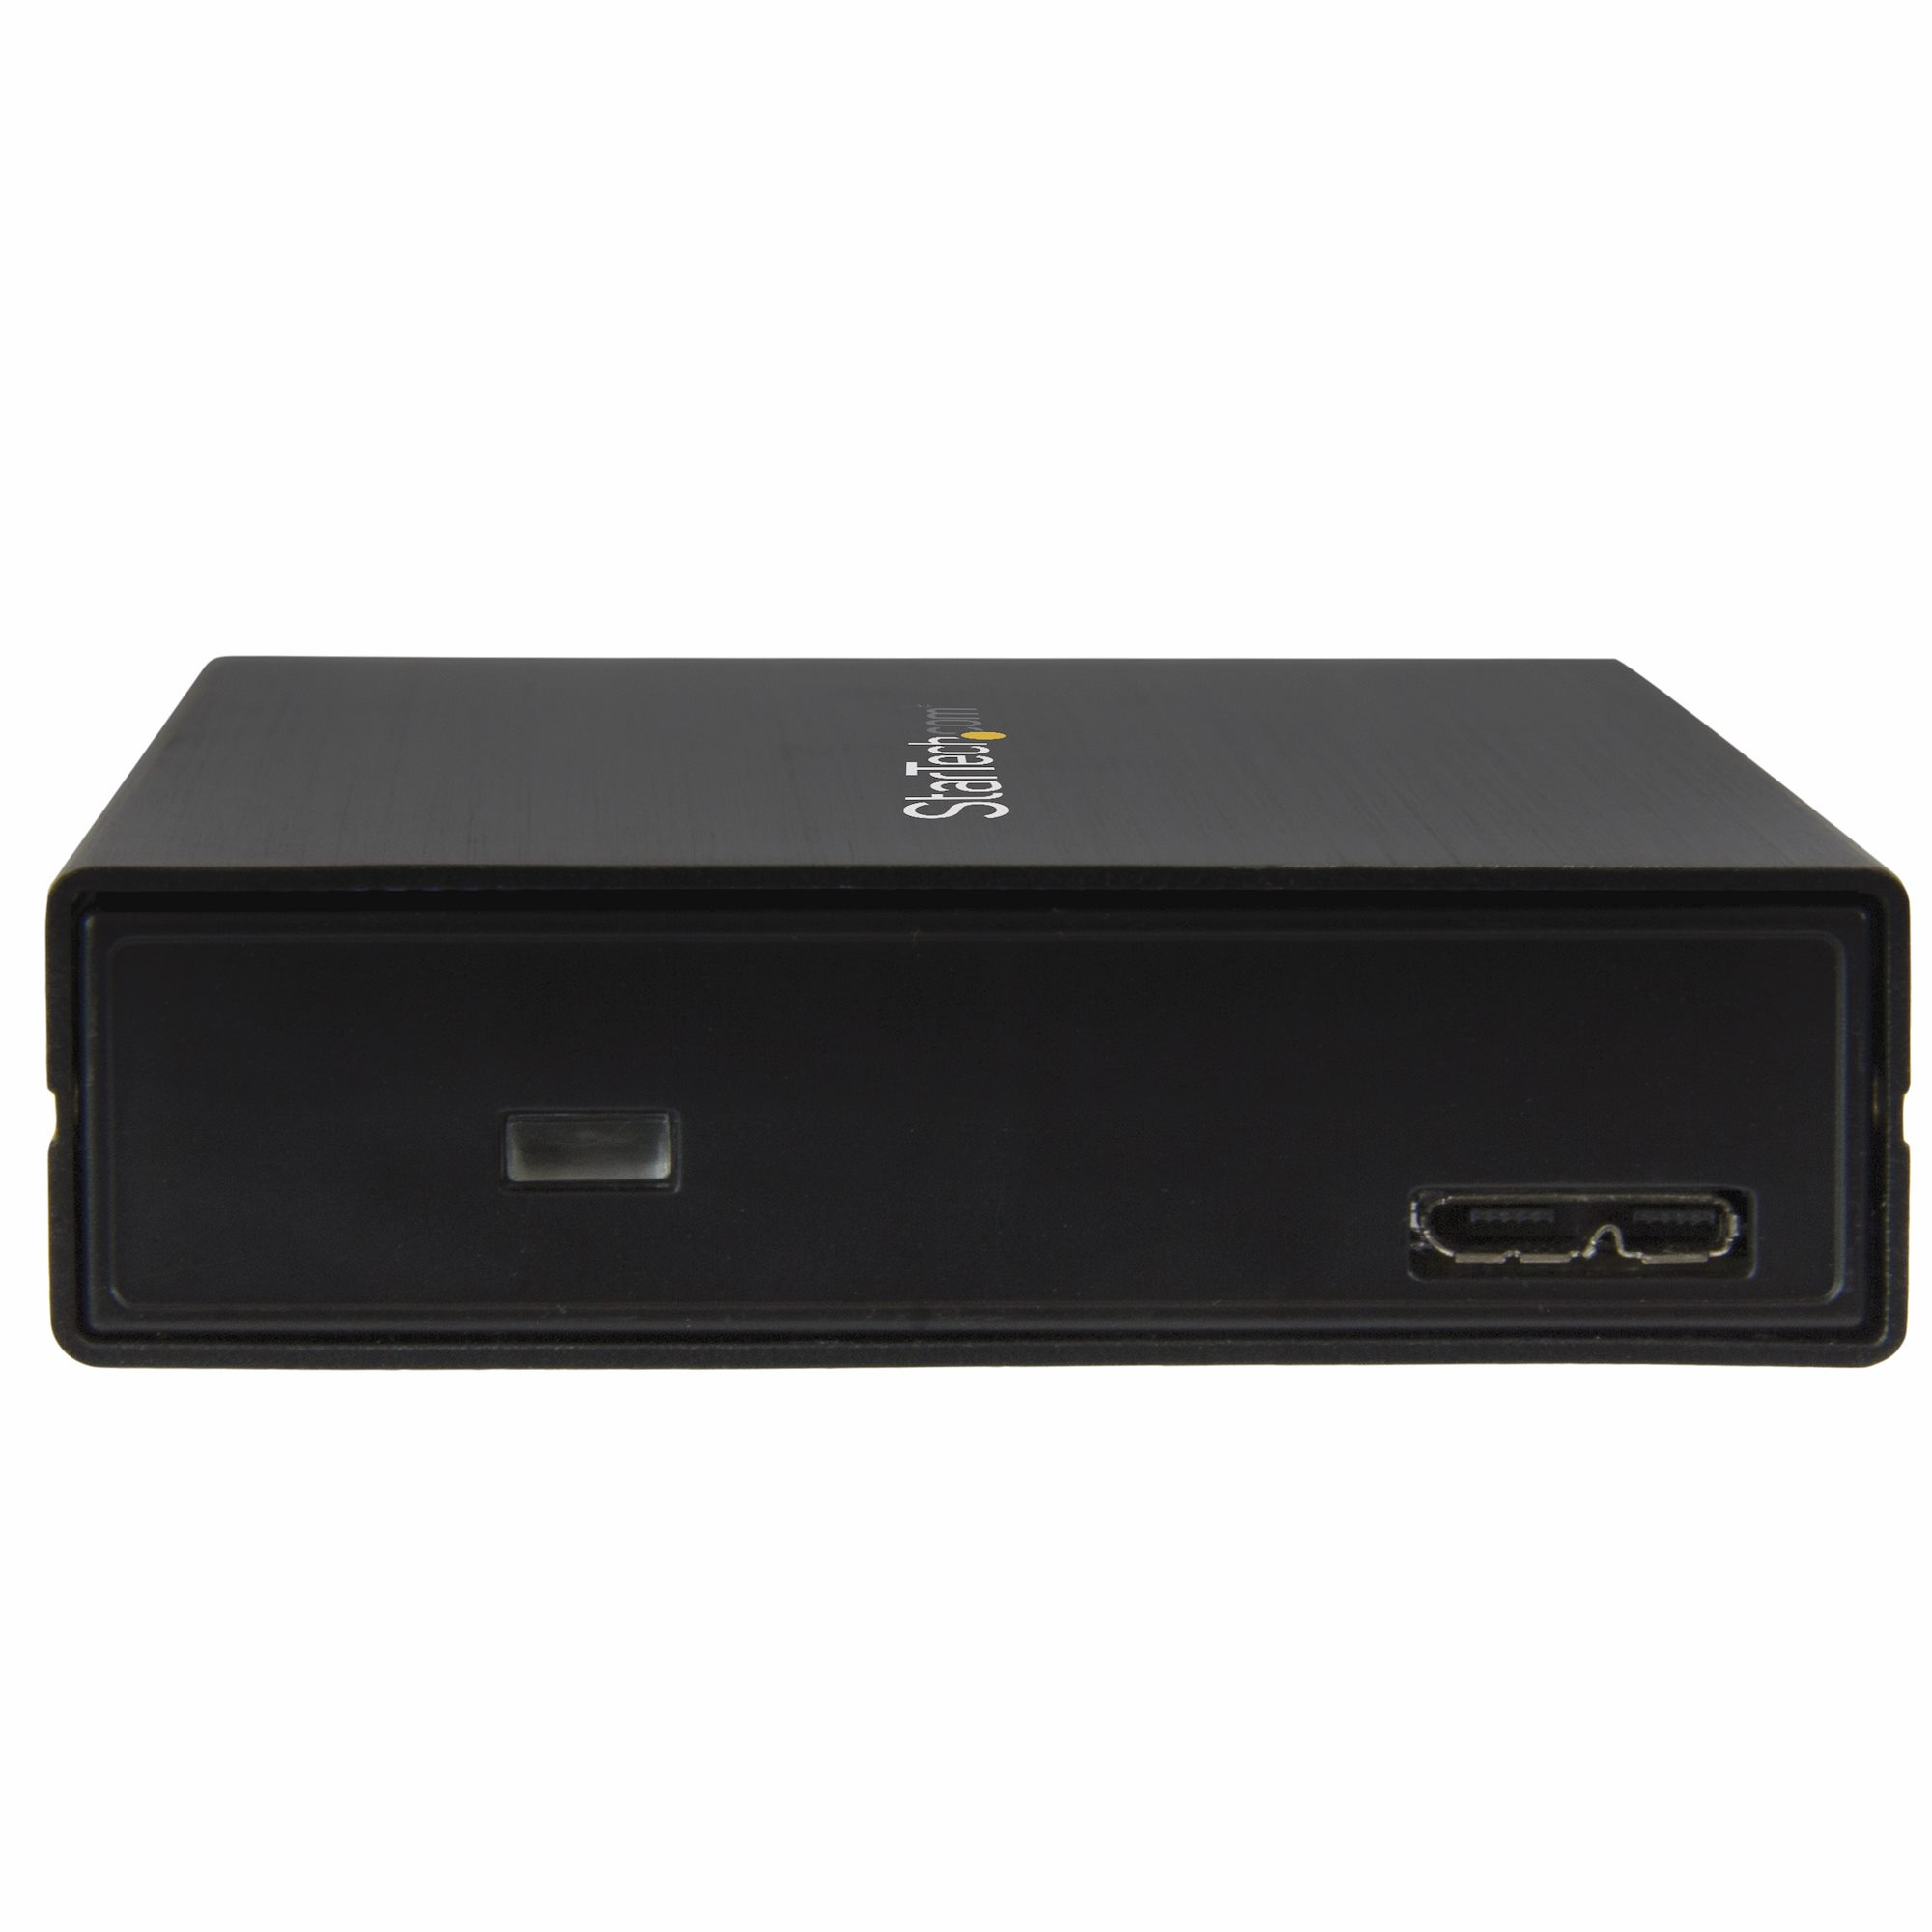 2.5インチSATA対応SSD HDDケース USB 3.1(10Gbps) USB-CまたはUSB-Aポート接続